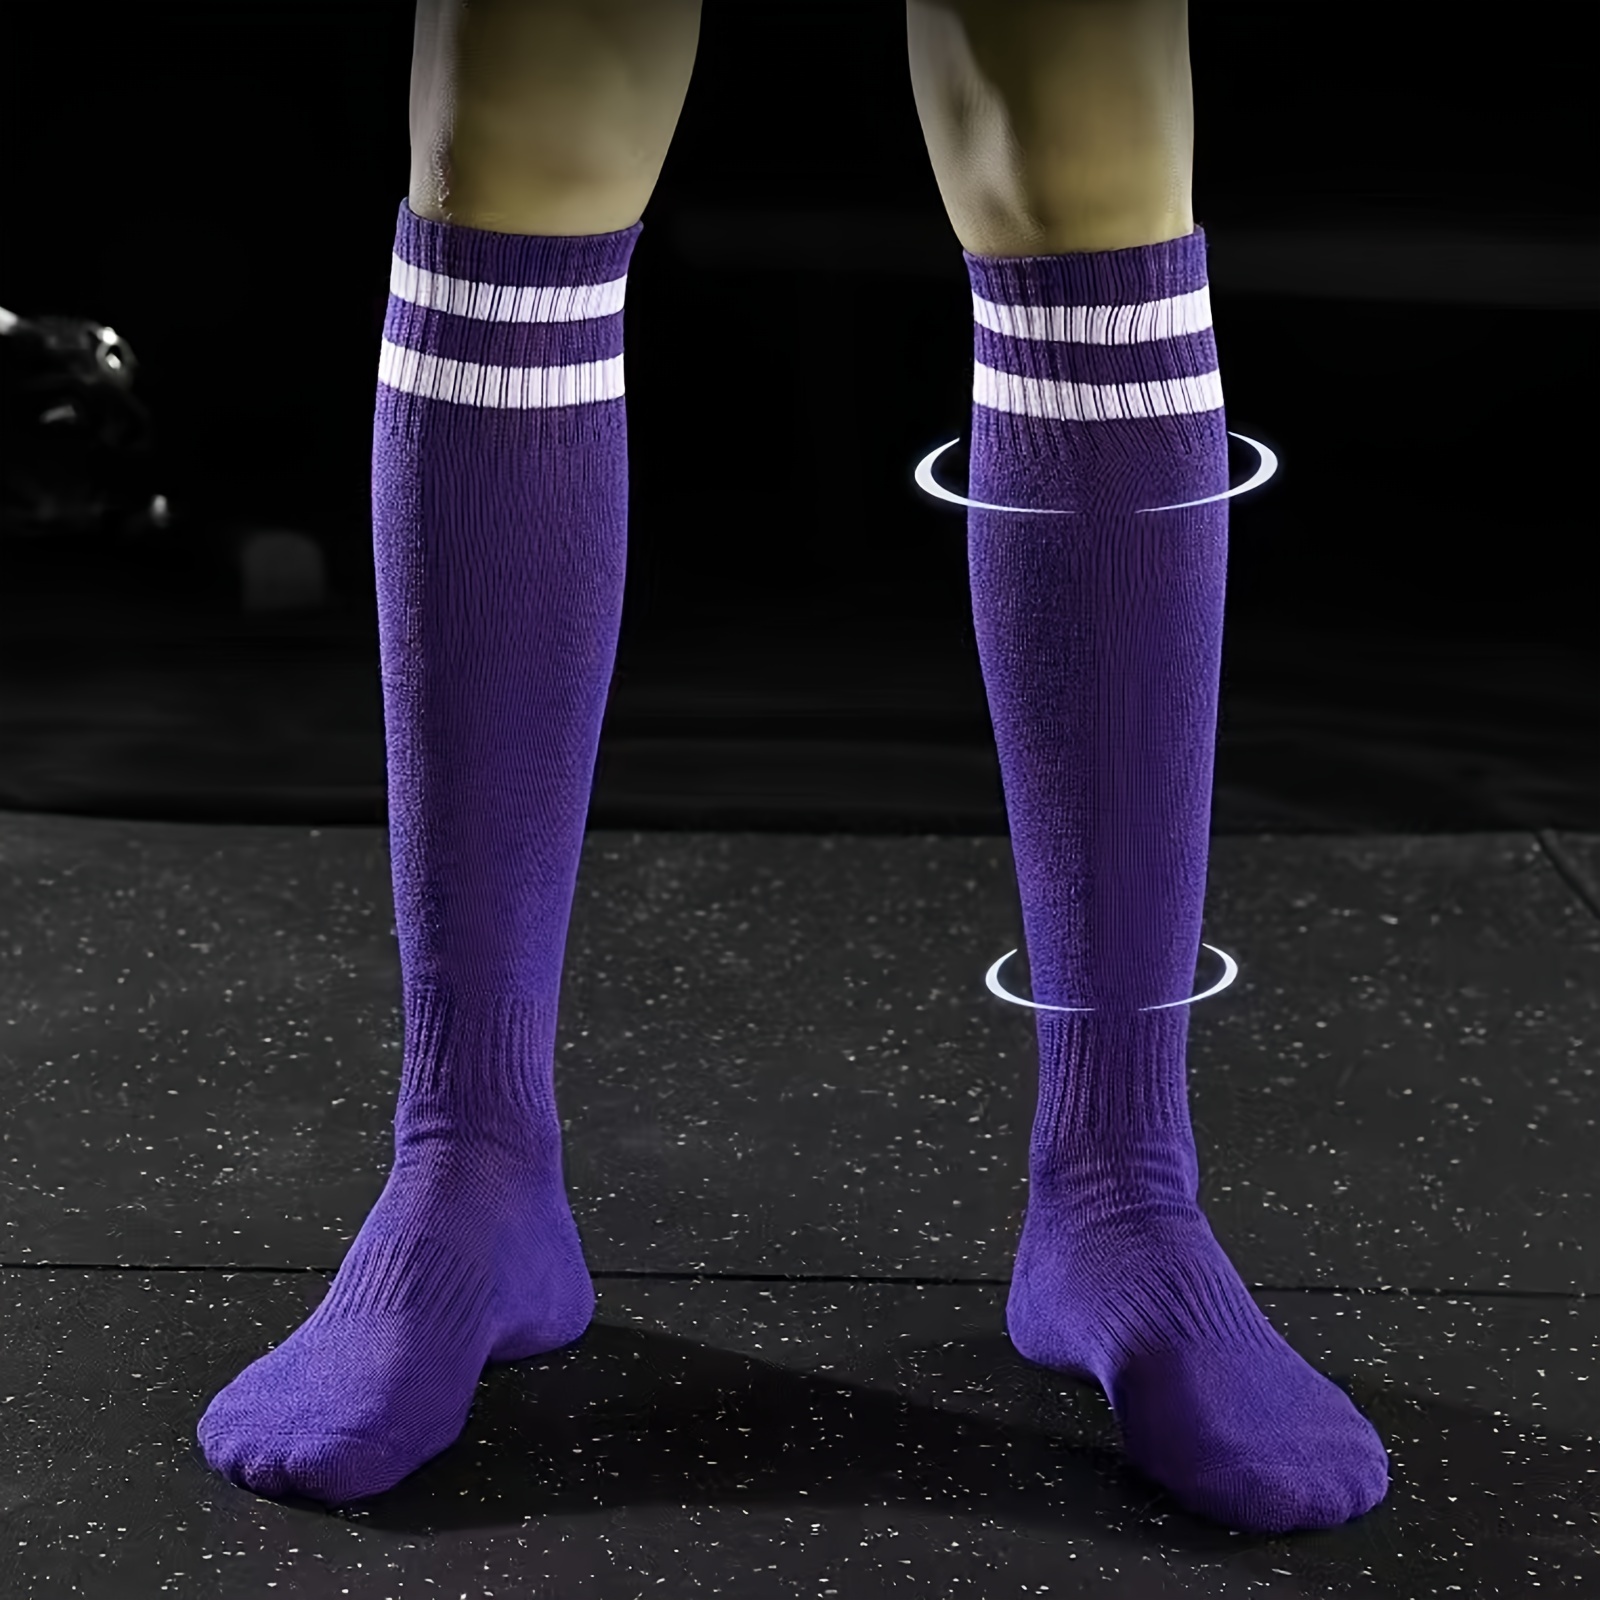 Calcetines de fútbol finos, calcetines largos deportivos resistentes al  desgaste para adultos, unisex, talla única, morado (6-10) para Foot